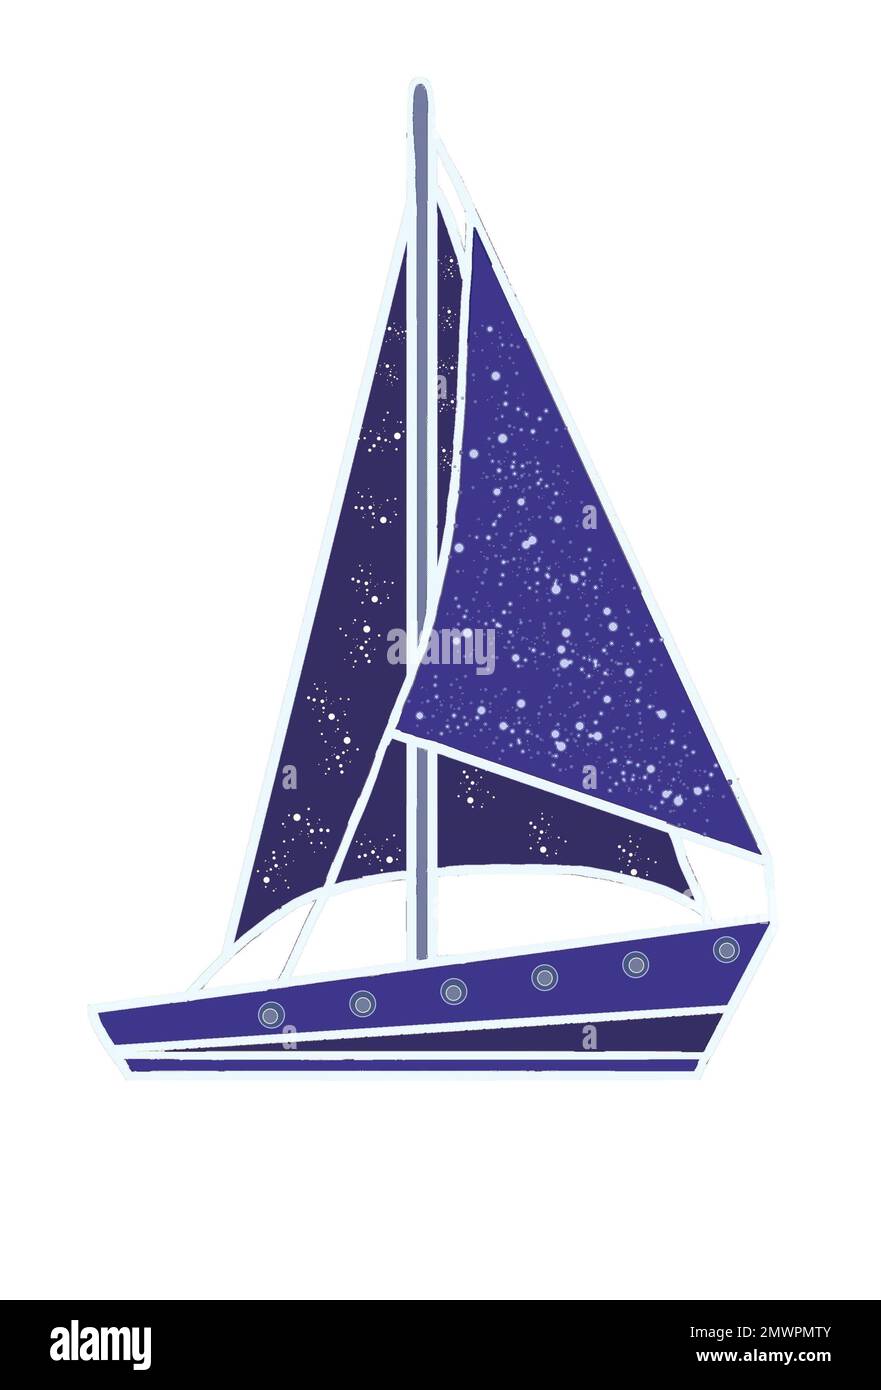 Immagine di uno yacht blu con l'immagine del cielo stellato sulle vele. Illustrazione JPEG per tessuti, tessuti, imballaggi, regali, cartoline, biancheria Foto Stock